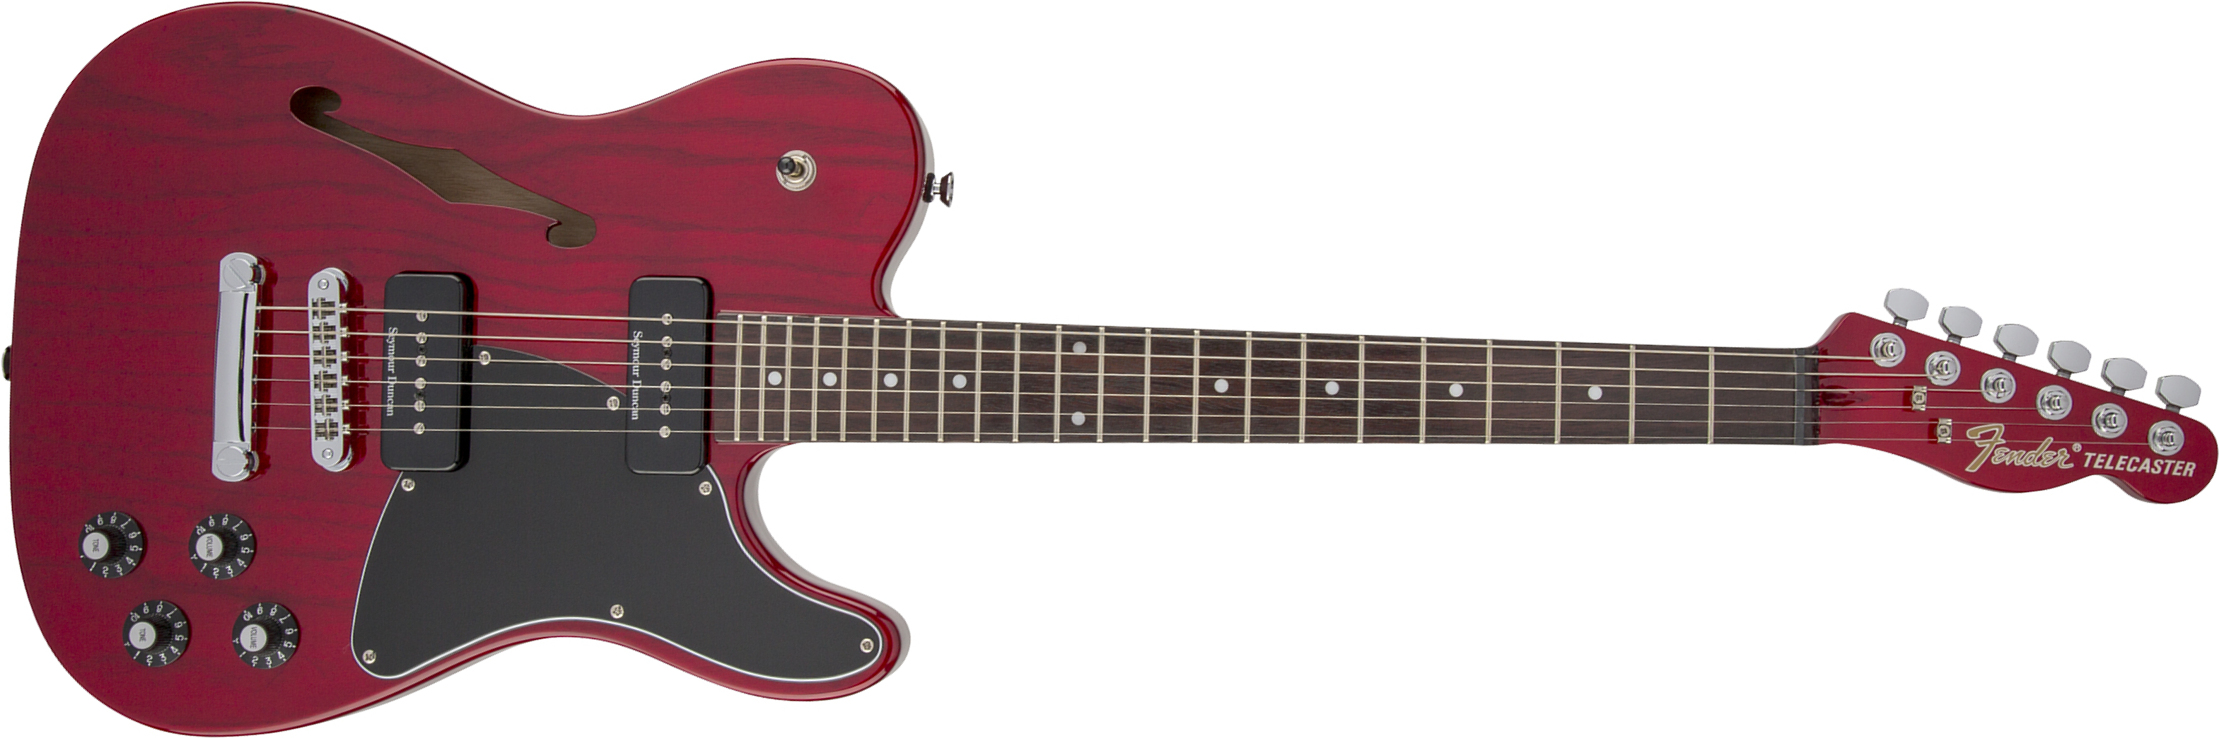 Fender Jim Adkins Tele Ja-90 Mex Signature 2p90 Lau - Crimson Red Transparent - E-Gitarre in Teleform - Main picture